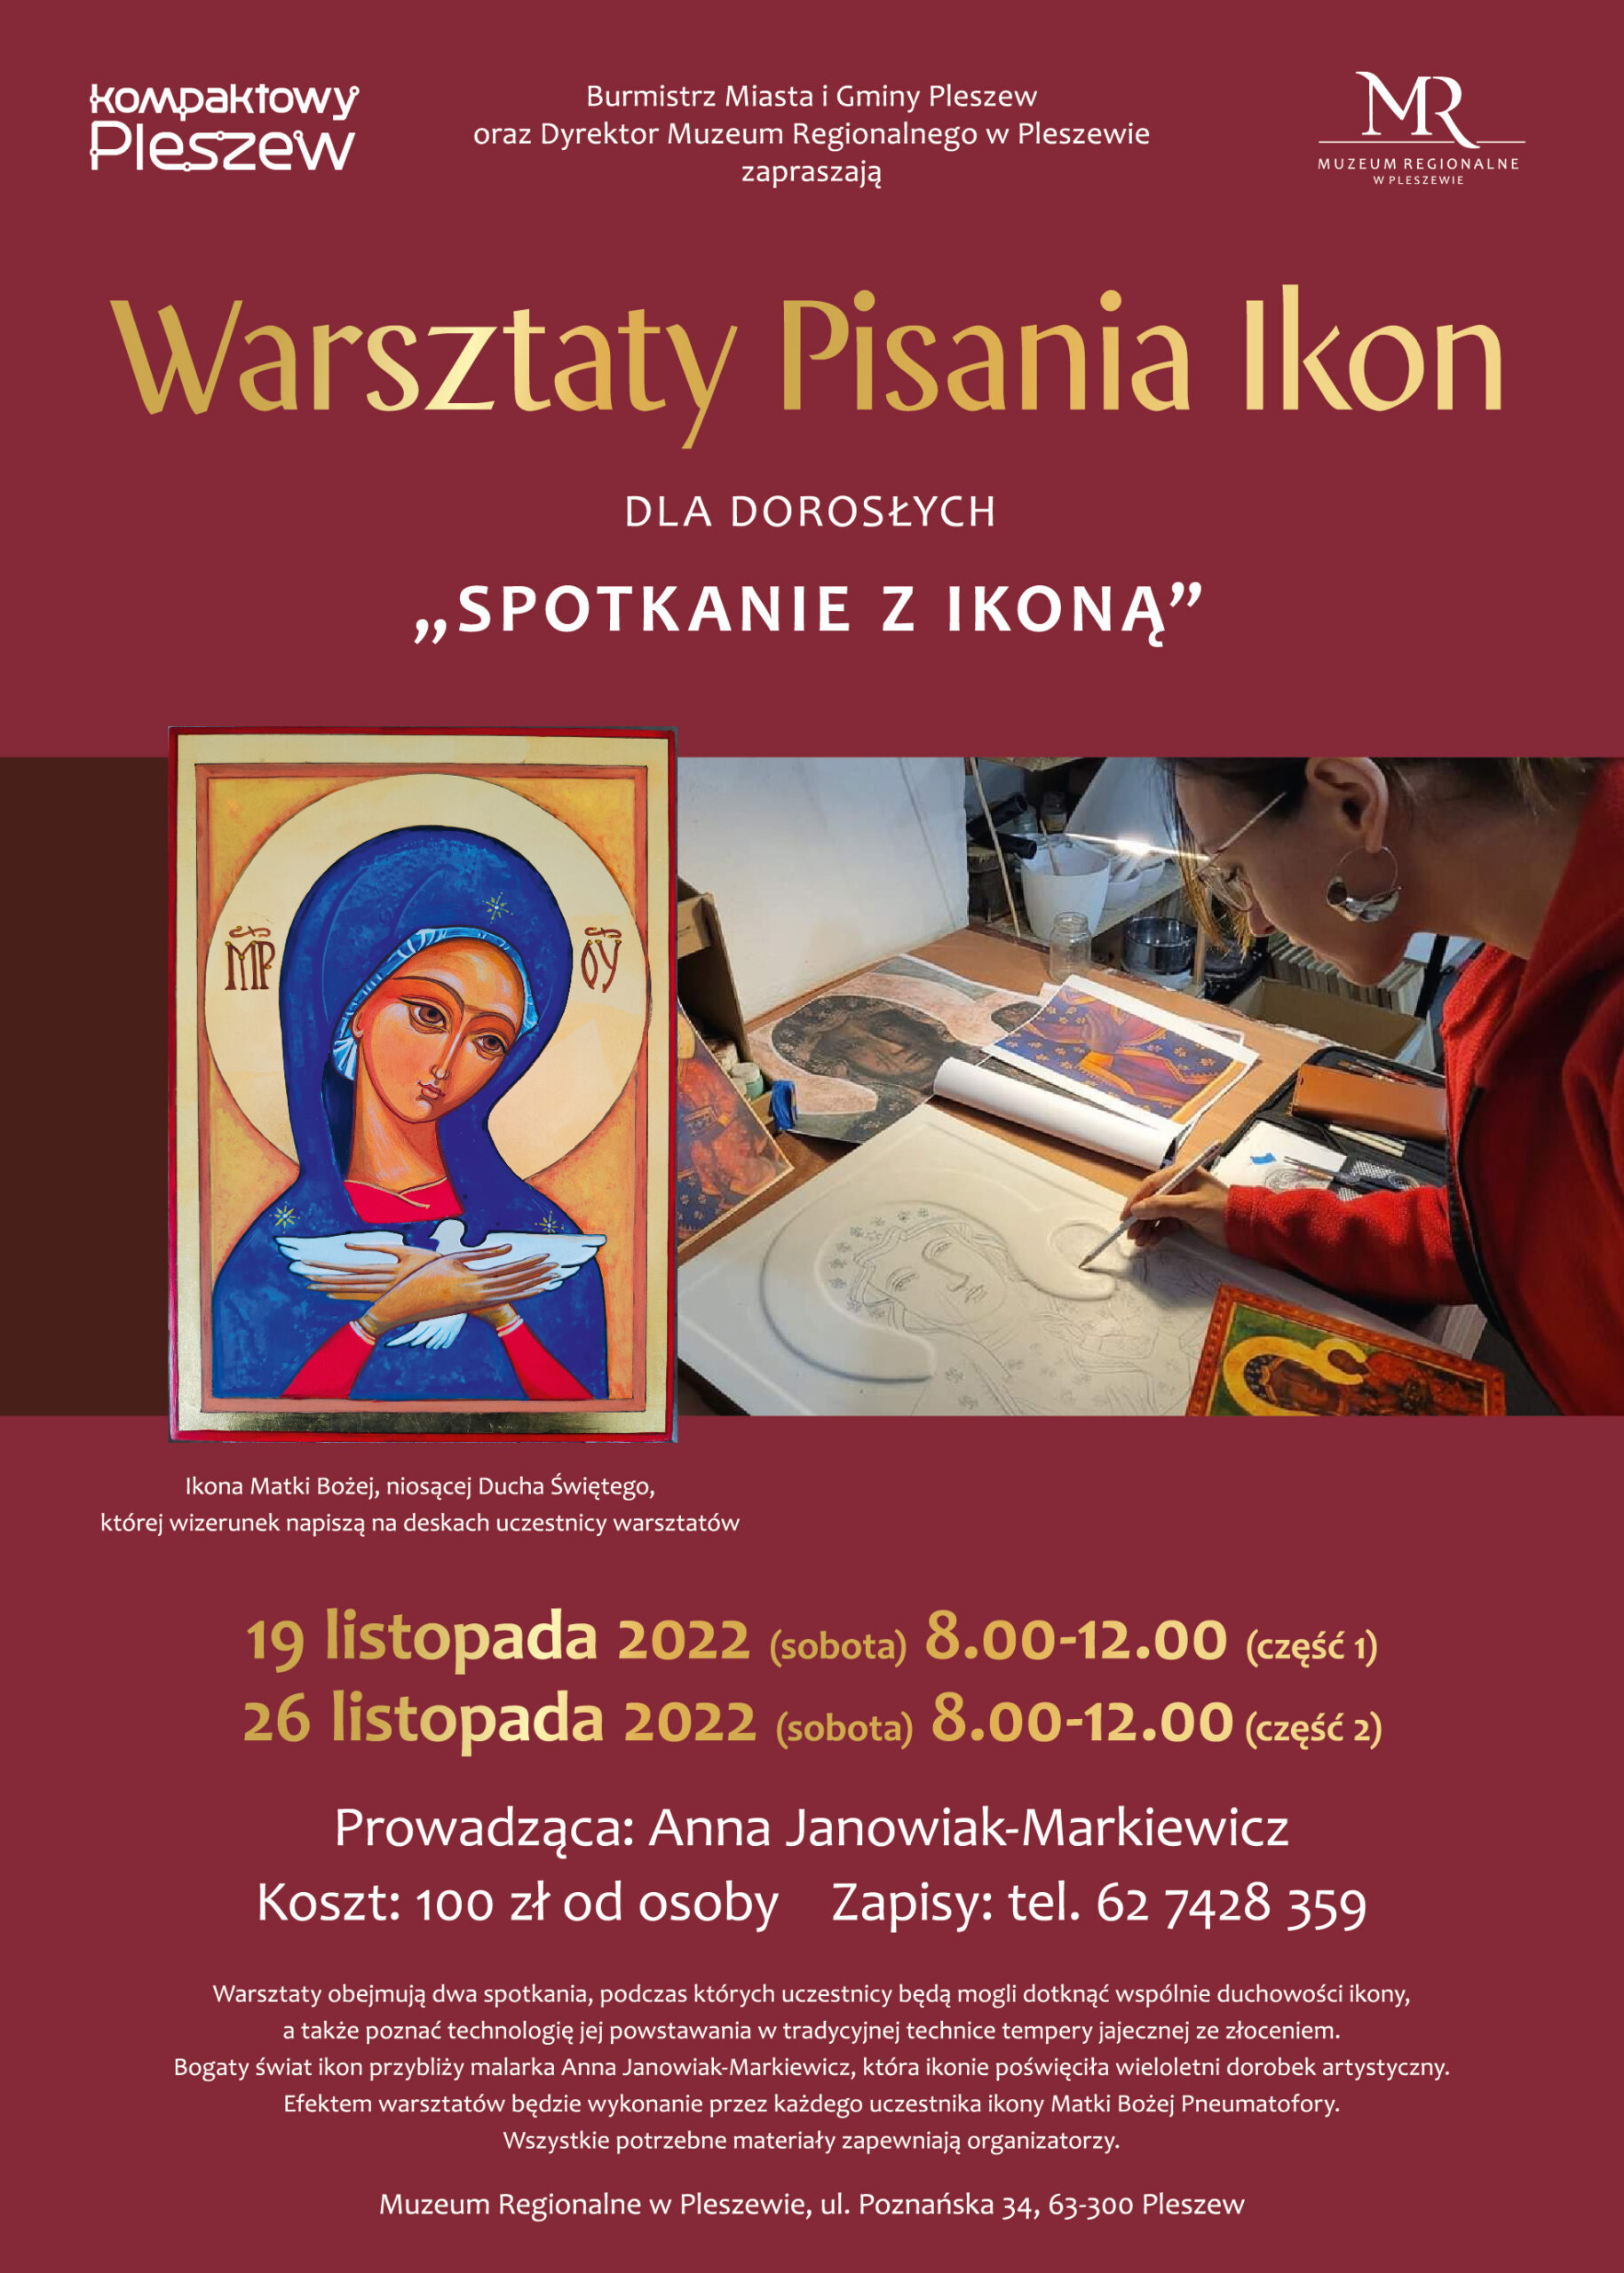 Plakat Warsztatów Pisania Ikon dla dorosłych odbywających się w Muzeum Regionalnym w Pleszewie w dniach 19 i 26 listopada